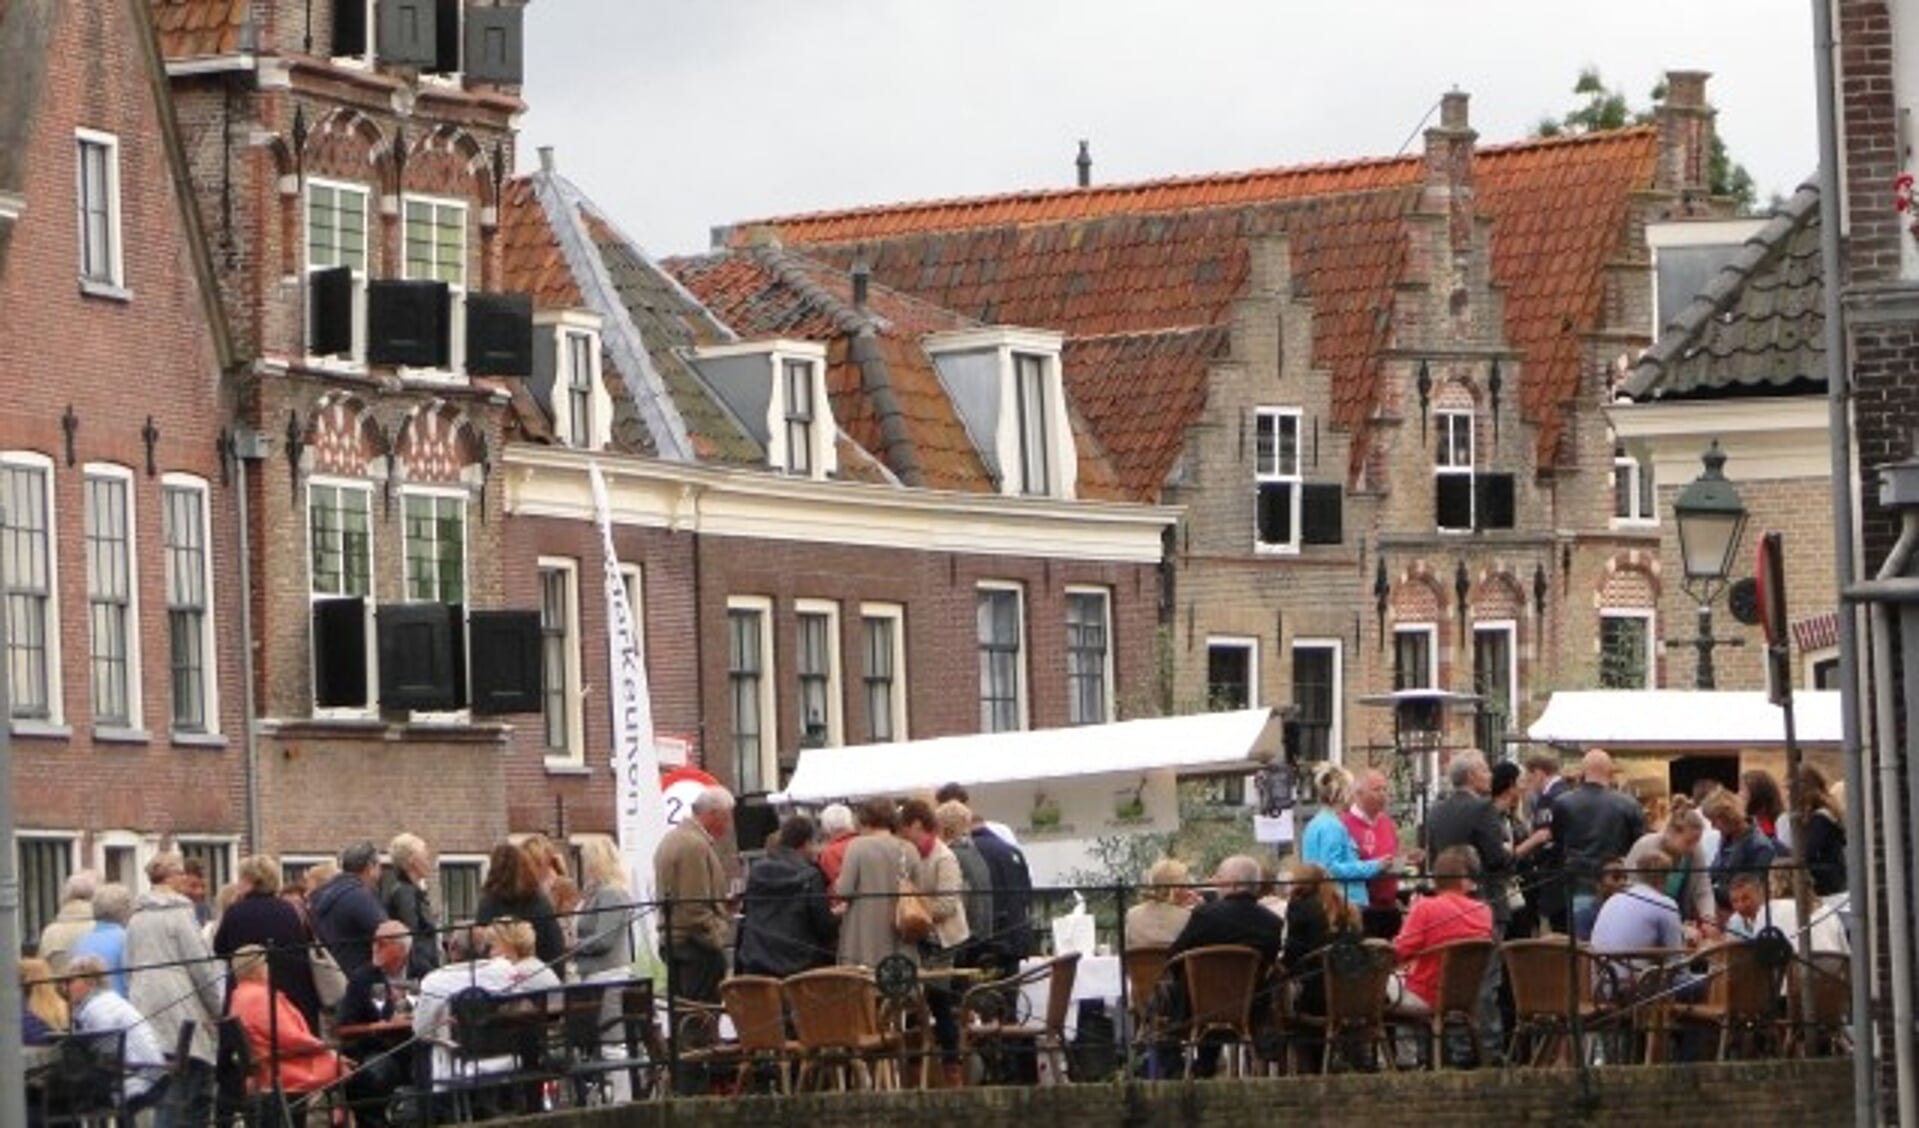 Pracht aan de Gracht, volop genieten met elkaar in hartje Oudewater. (Foto: Archief Margreet Nagtegaal)